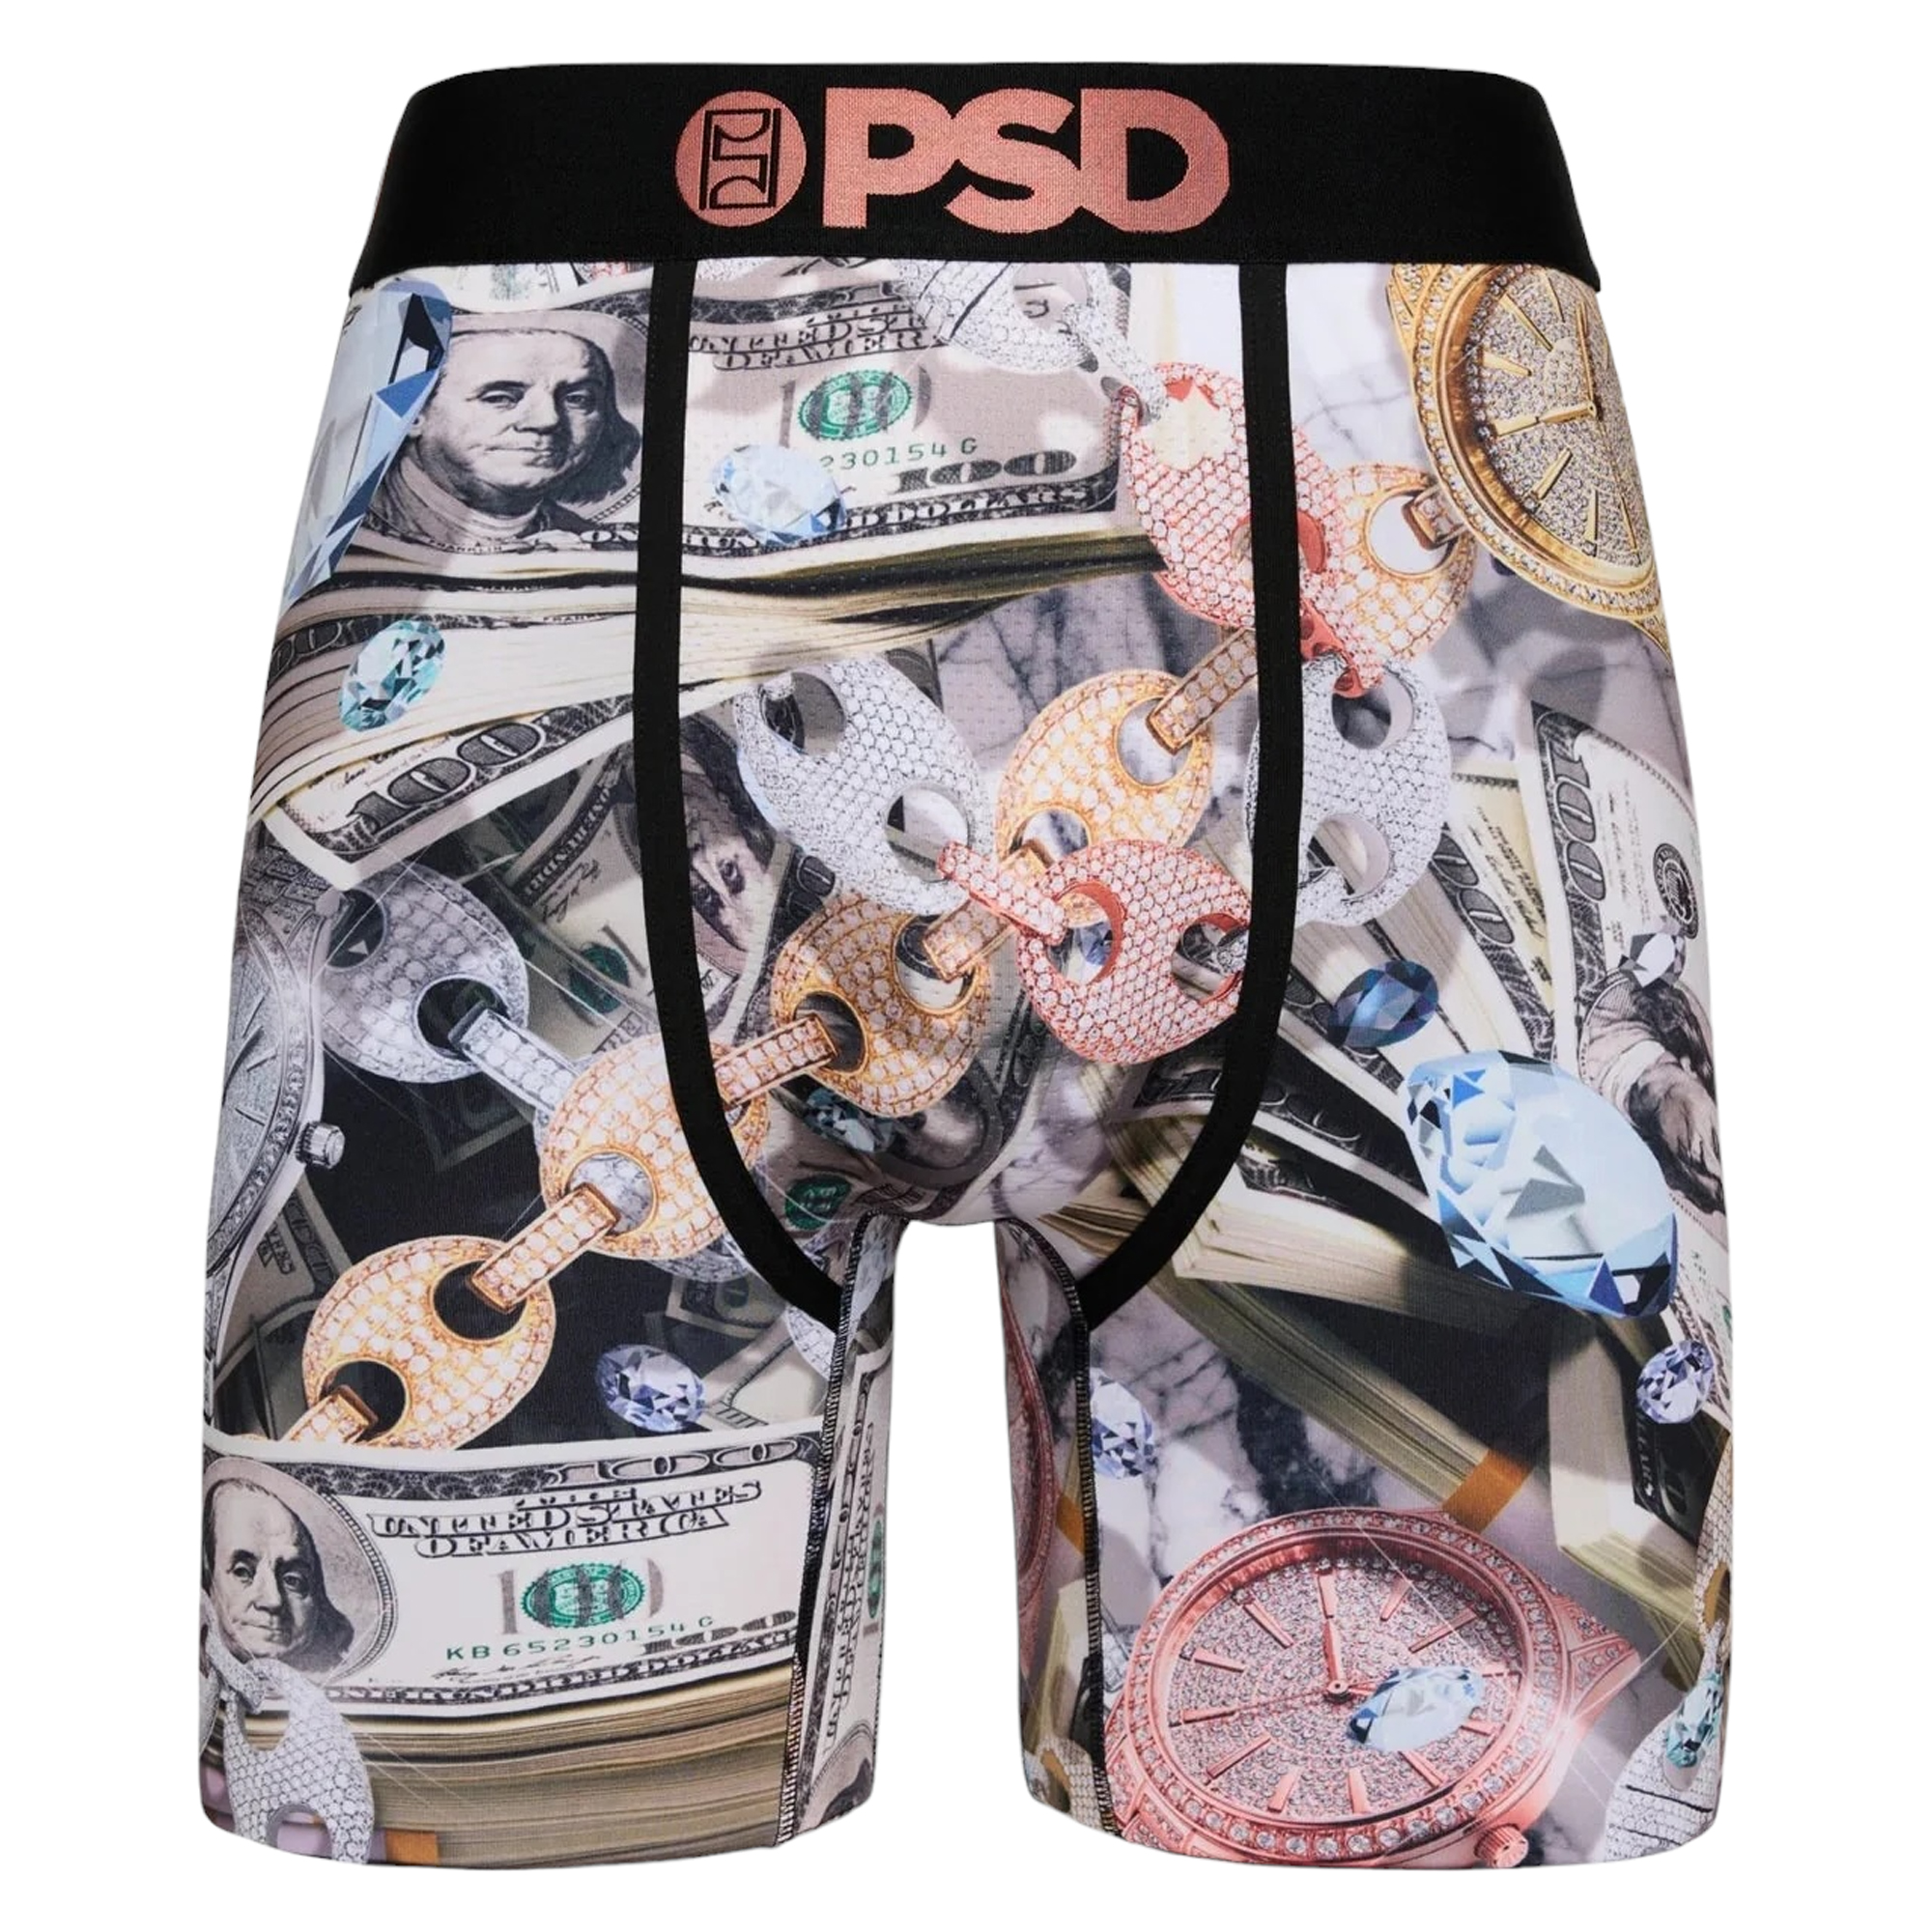 PSD Friends TV Show 90s Retro Urban Athletic Boxer Briefs Underwear  E31911093